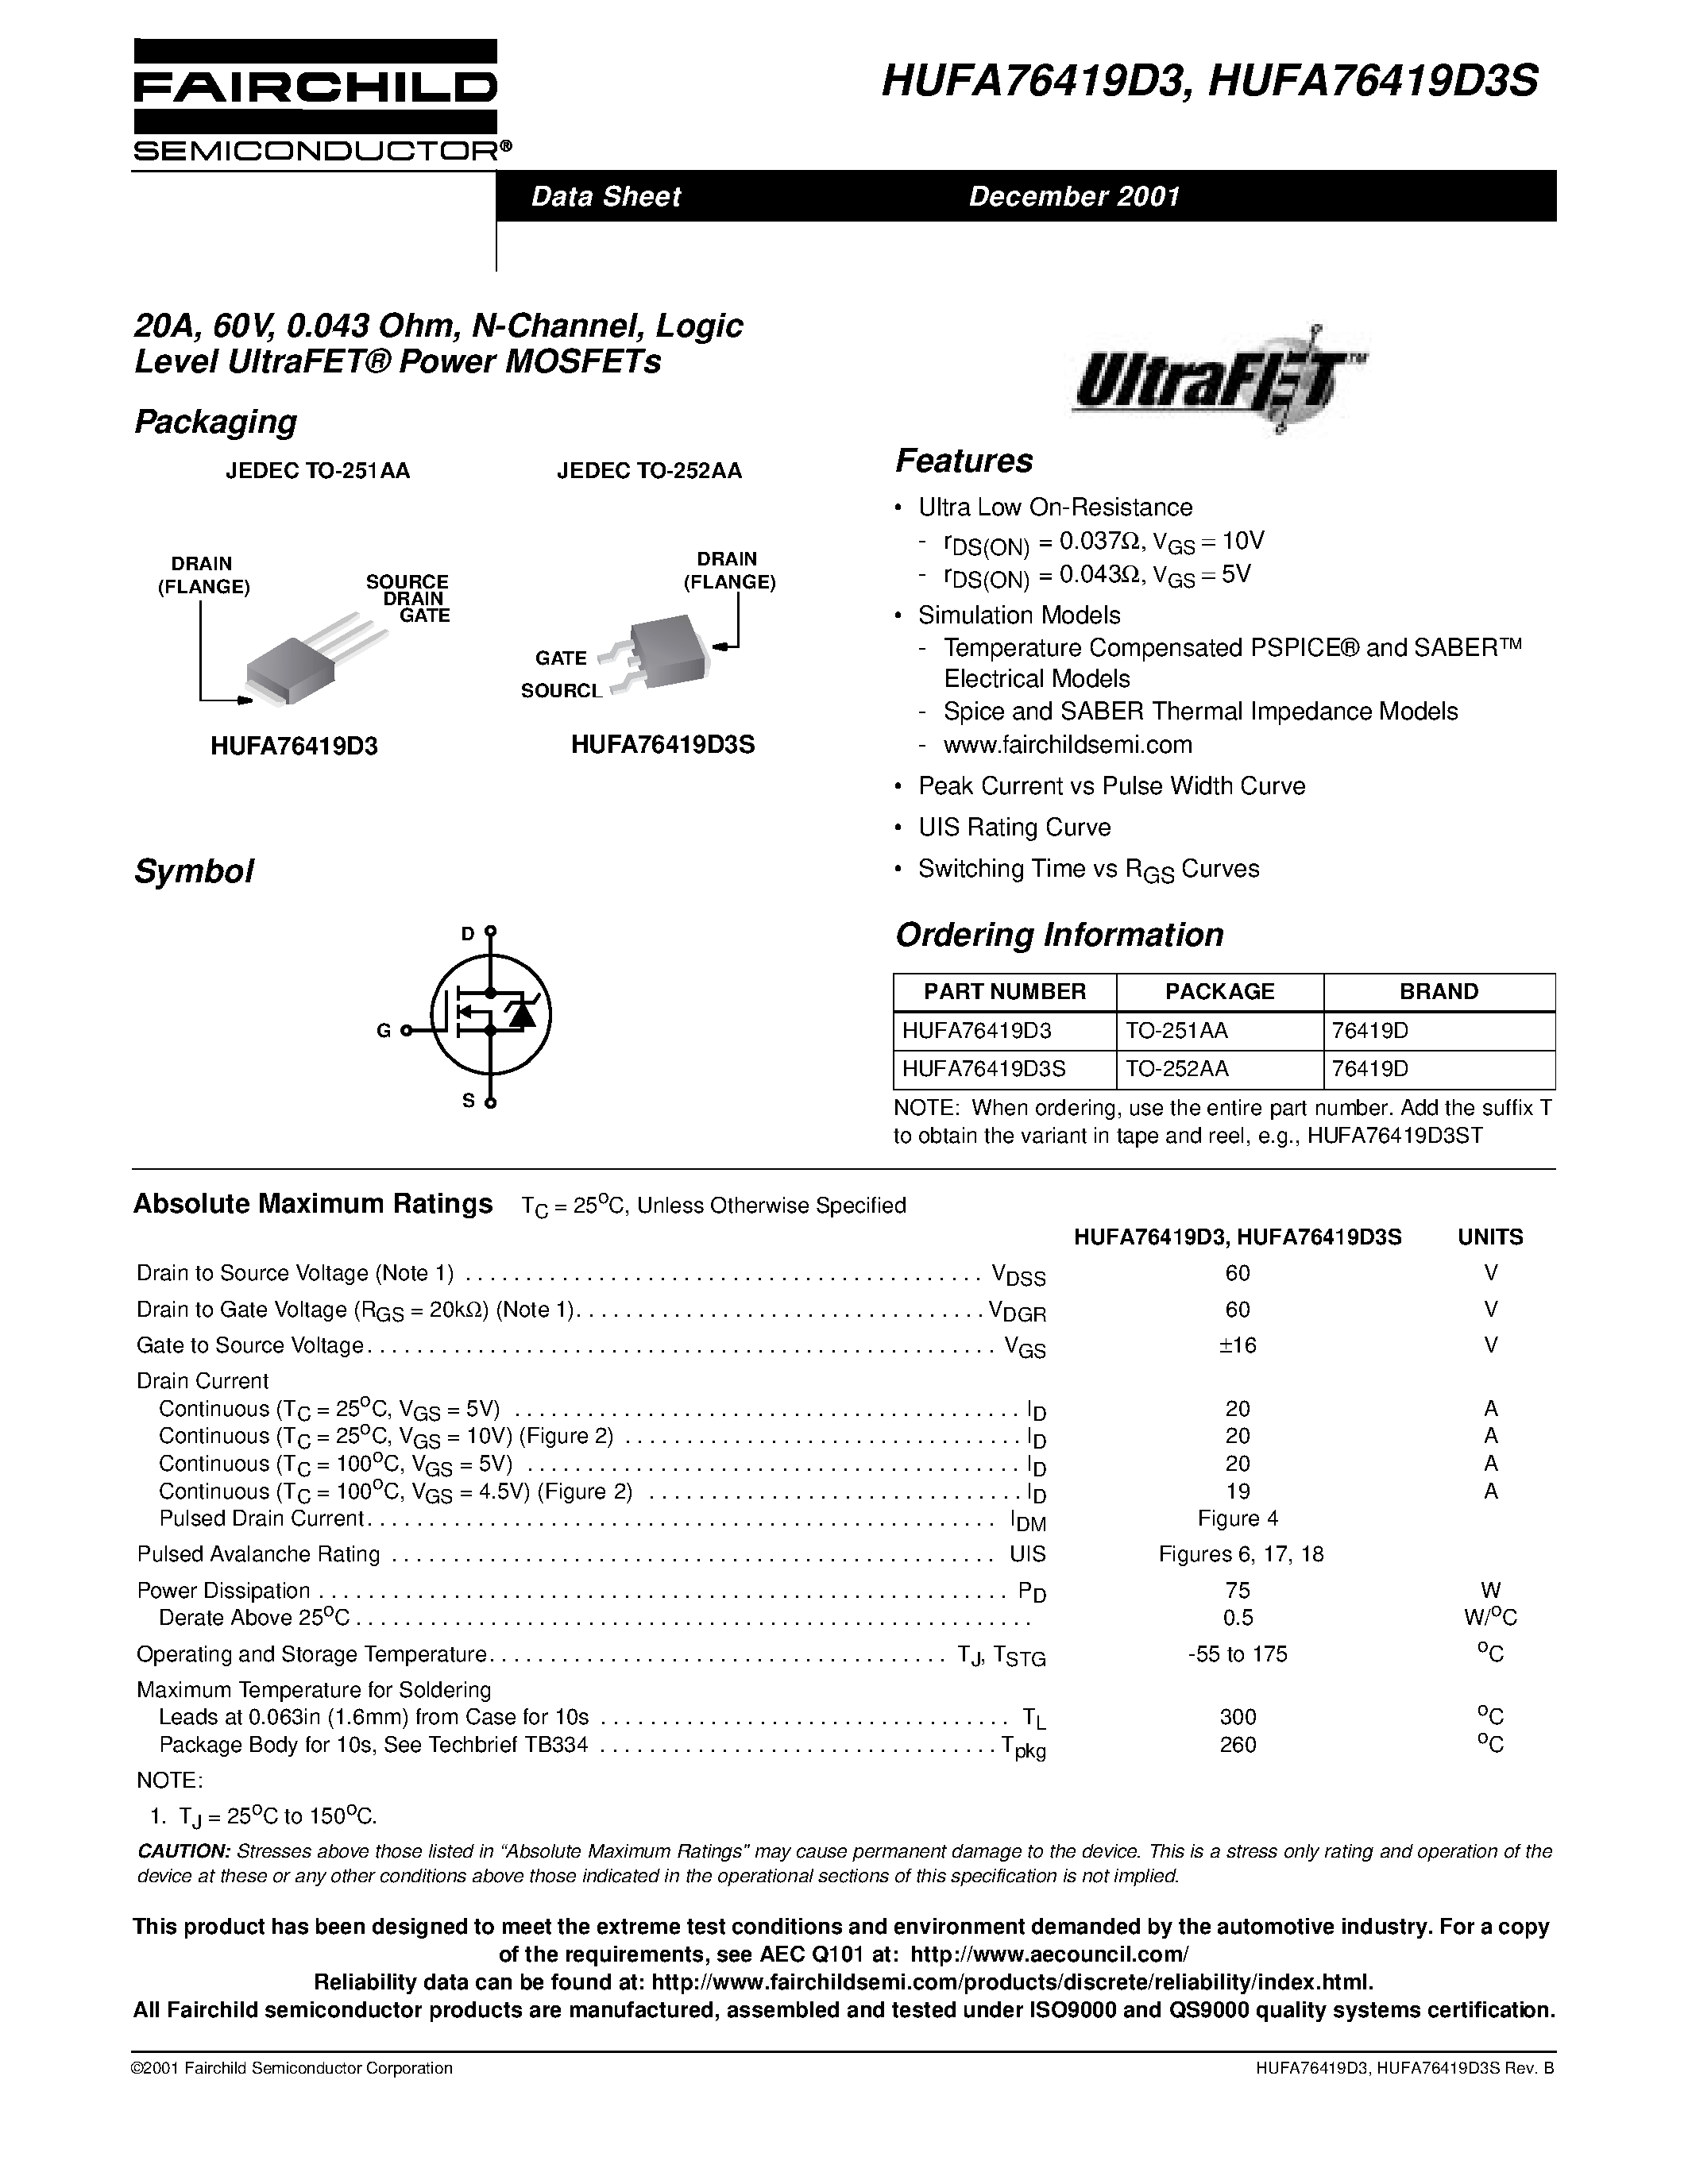 Даташит HUFA76419D3 - 20A/ 60V/ 0.043 Ohm/ N-Channel/ Logic Level UltraFET Power MOSFETs страница 1